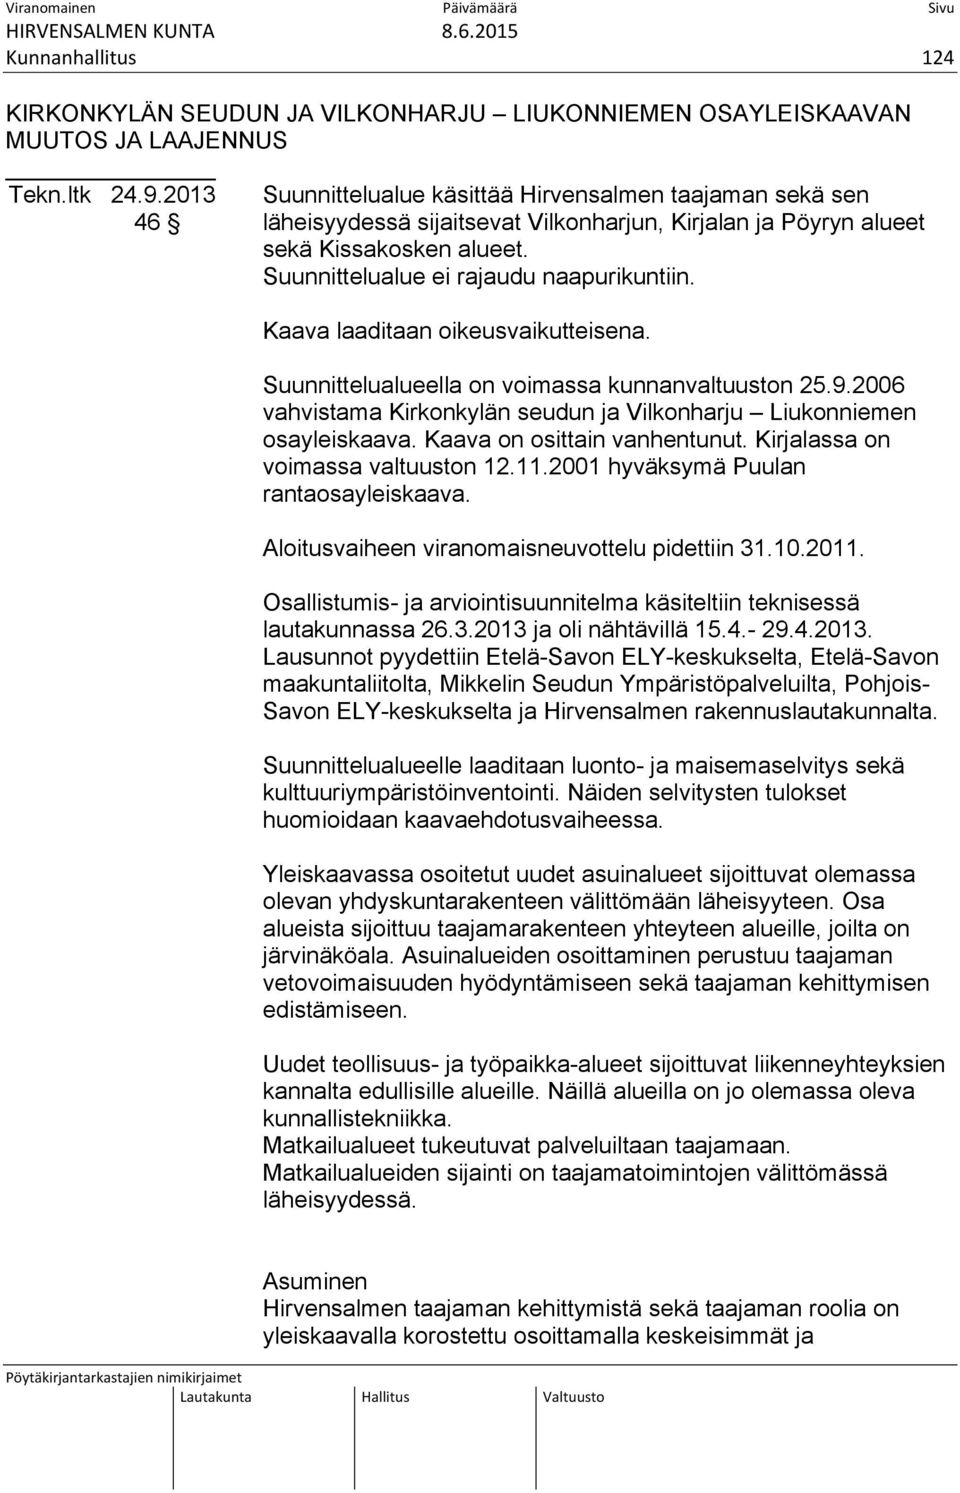 Kaava laaditaan oikeusvaikutteisena. Suunnittelualueella on voimassa kunnanvaltuuston 25.9.2006 vahvistama Kirkonkylän seudun ja Vilkonharju Liukonniemen osayleiskaava. Kaava on osittain vanhentunut.